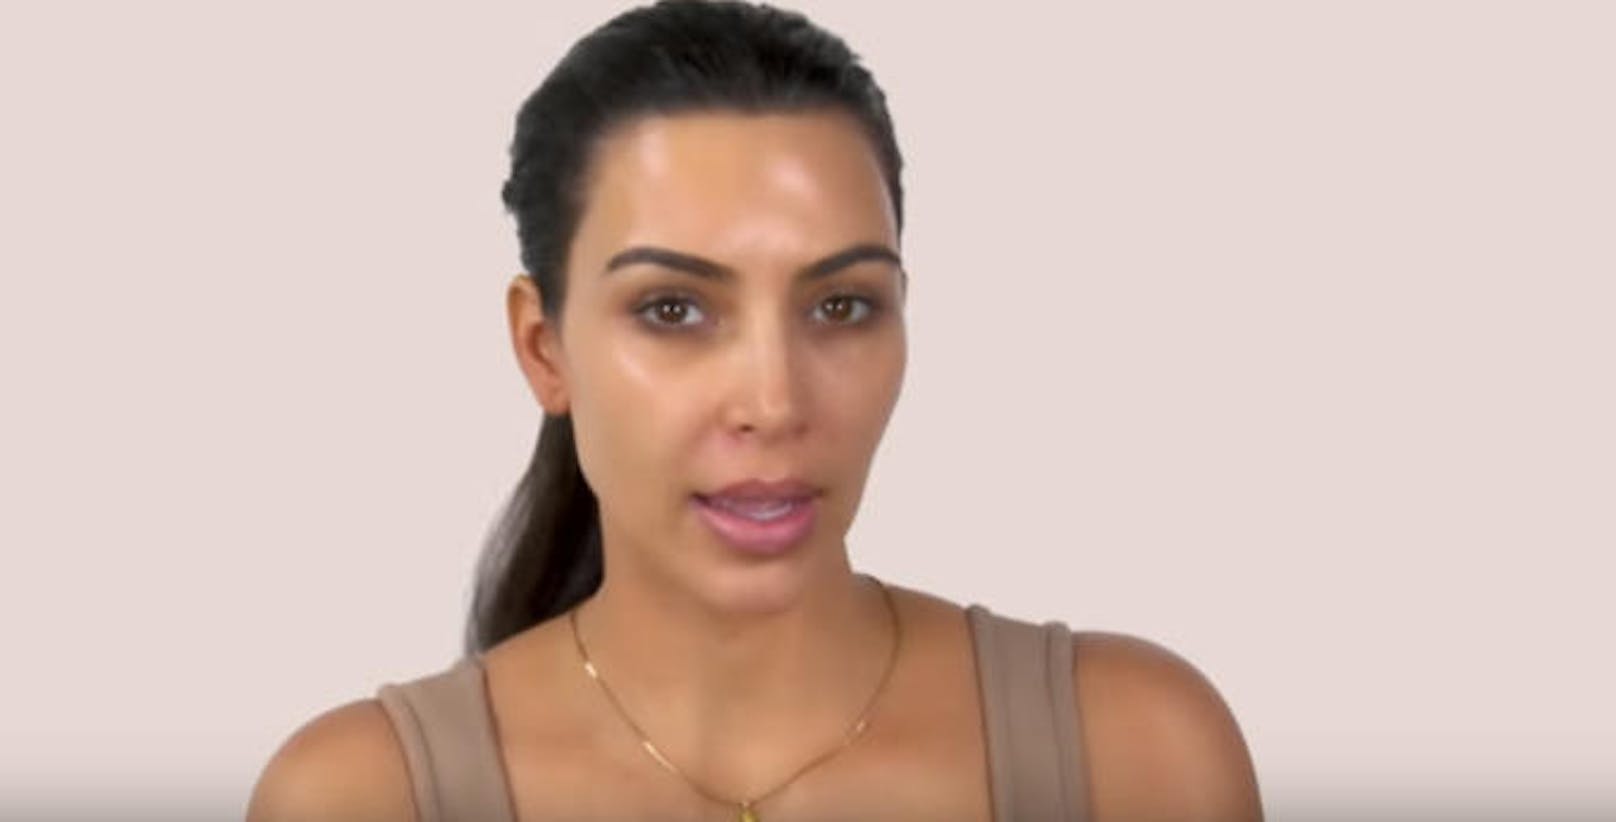 Kim Kardashian beginnt ihr Tutorial "ungeschminkt", wie sie sagt. 